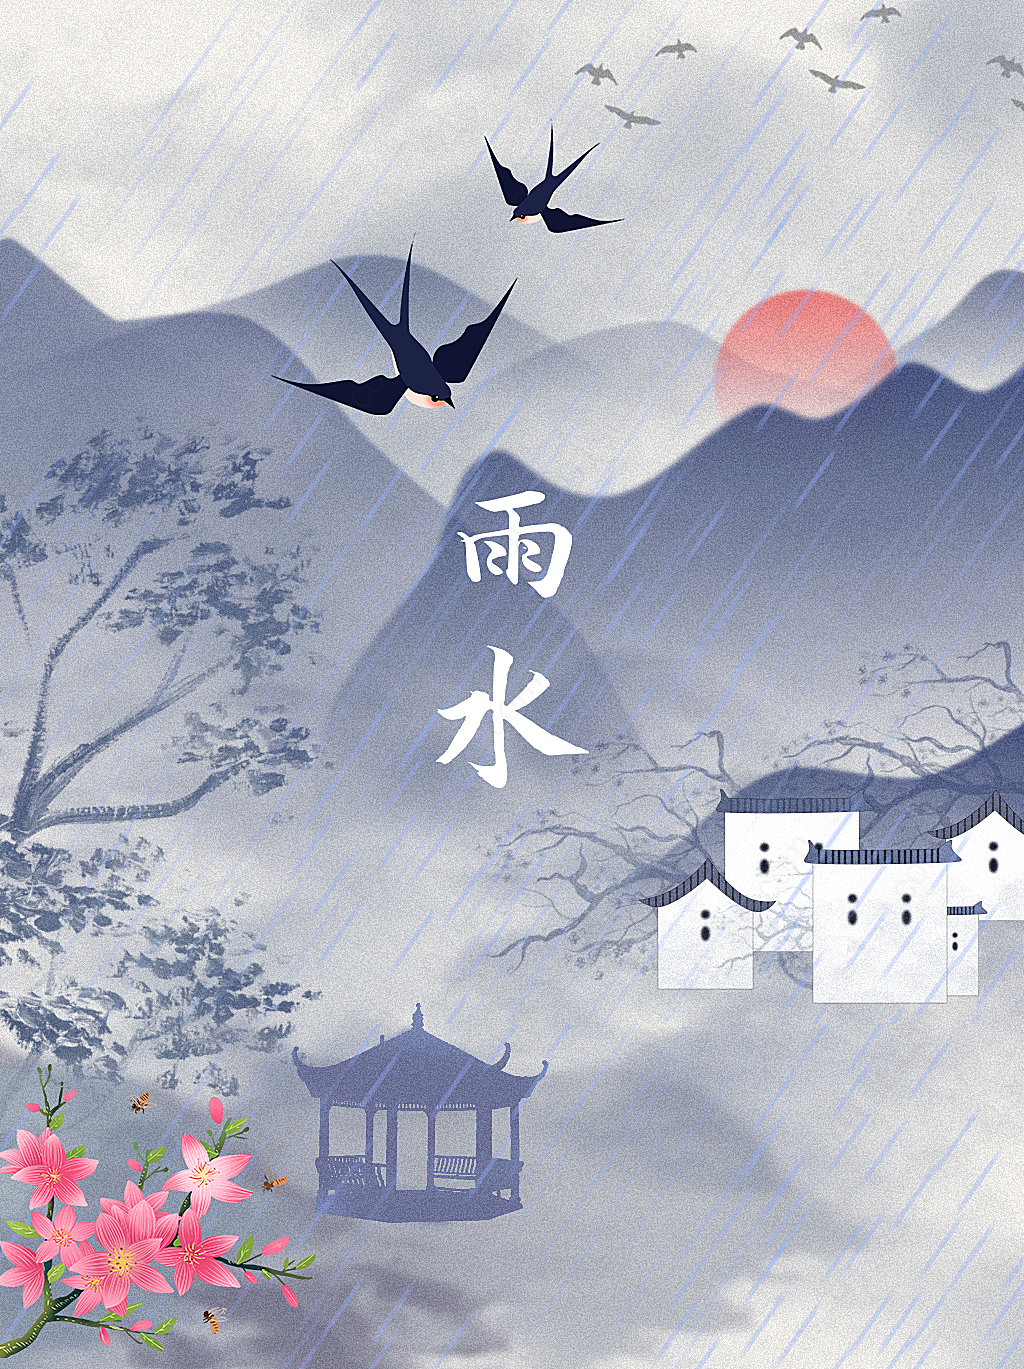 雨水节日海报